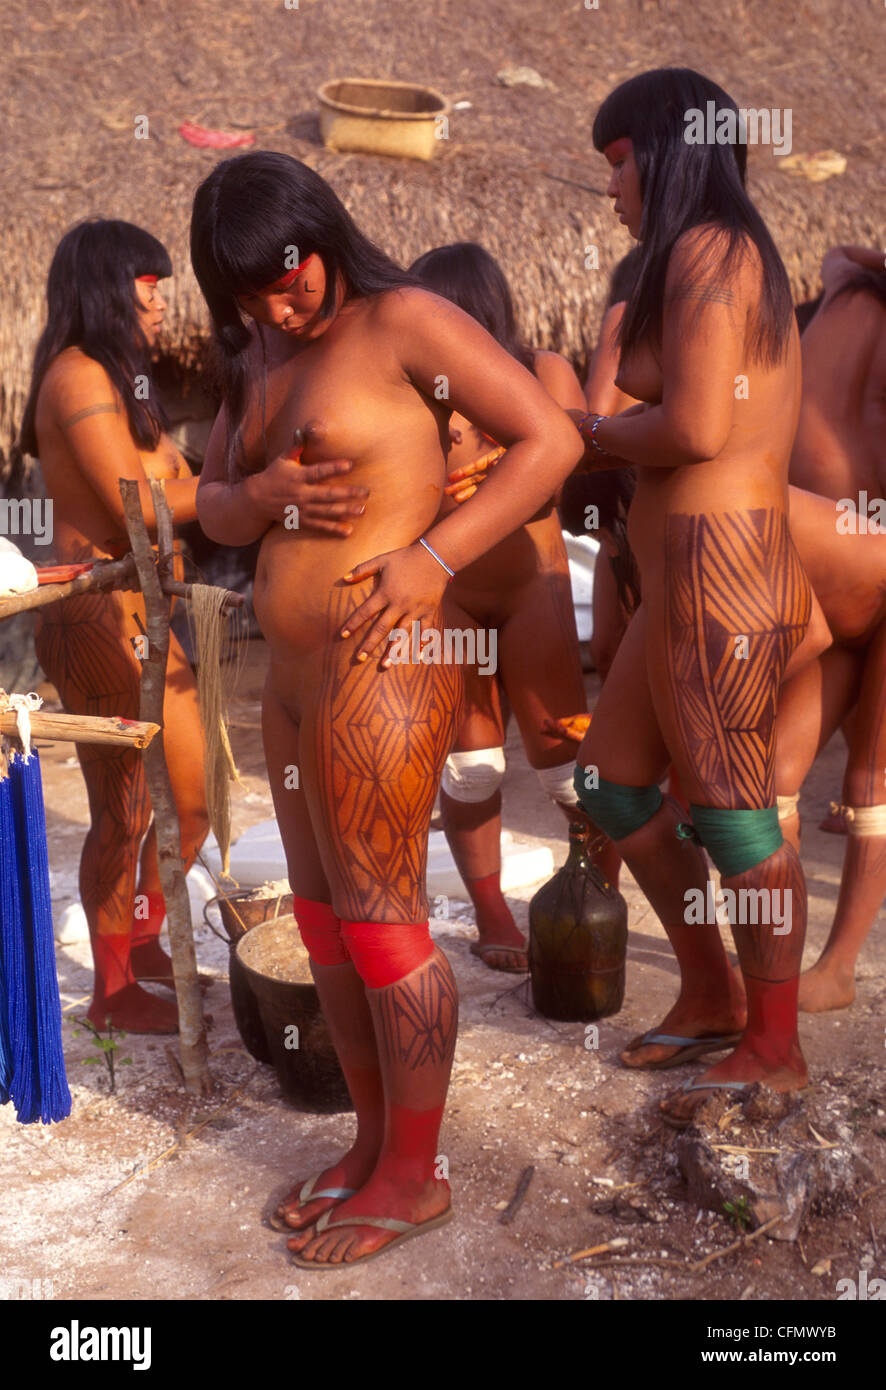 Порно категория ⛲ Племена амазонии ⛲ Последние ⛲ 1 ⛲ Блестящая коллекция